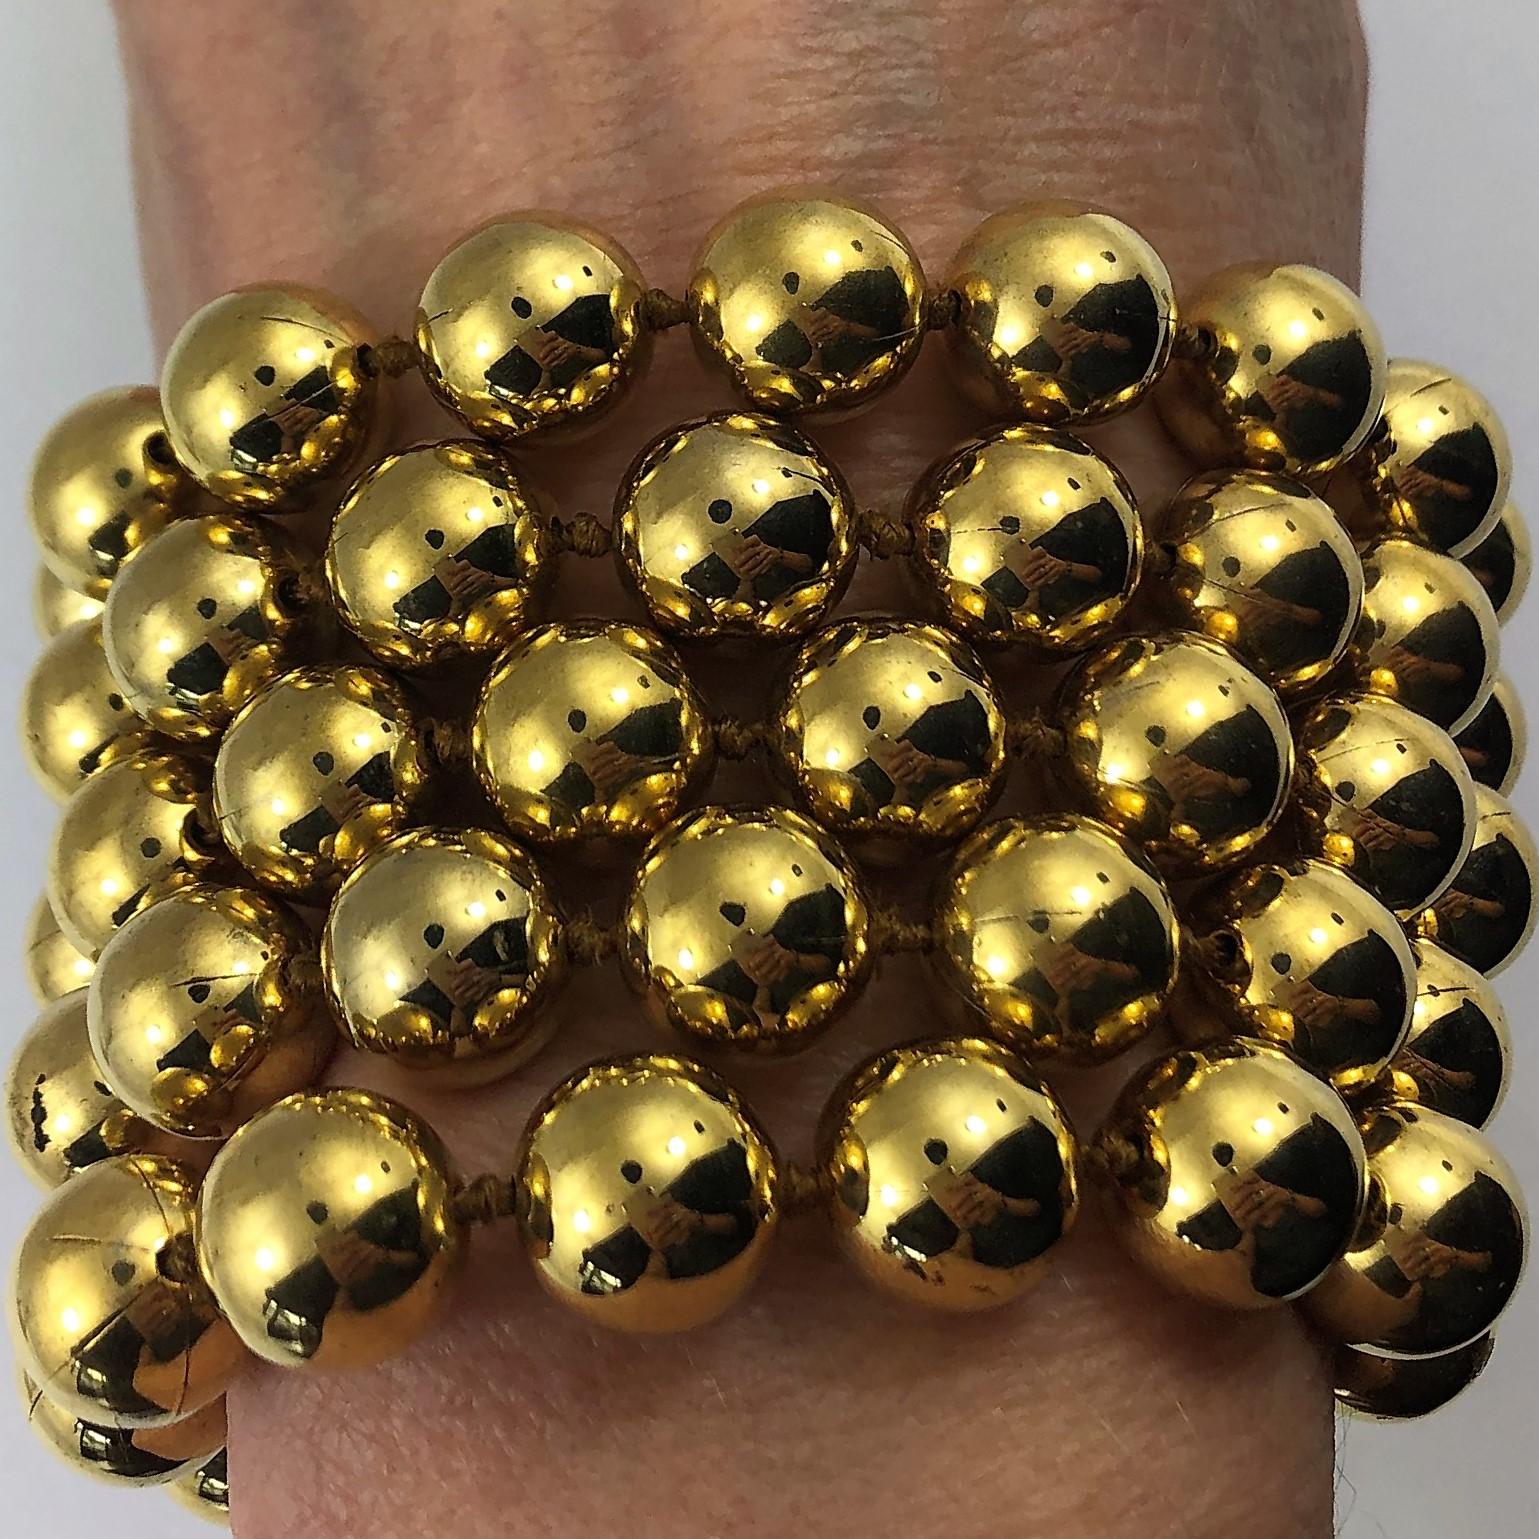 Ce bracelet vintage Chanel à 5 rangs de perles dorées de 10 mm d'épaisseur est d'une qualité exceptionnelle.
mesure 2 1/4 pouces de large. Le fermoir ajustable dans le dos permet de varier les
longueur, allant de 7 à 8 1/2 pouces. Fait partie de la